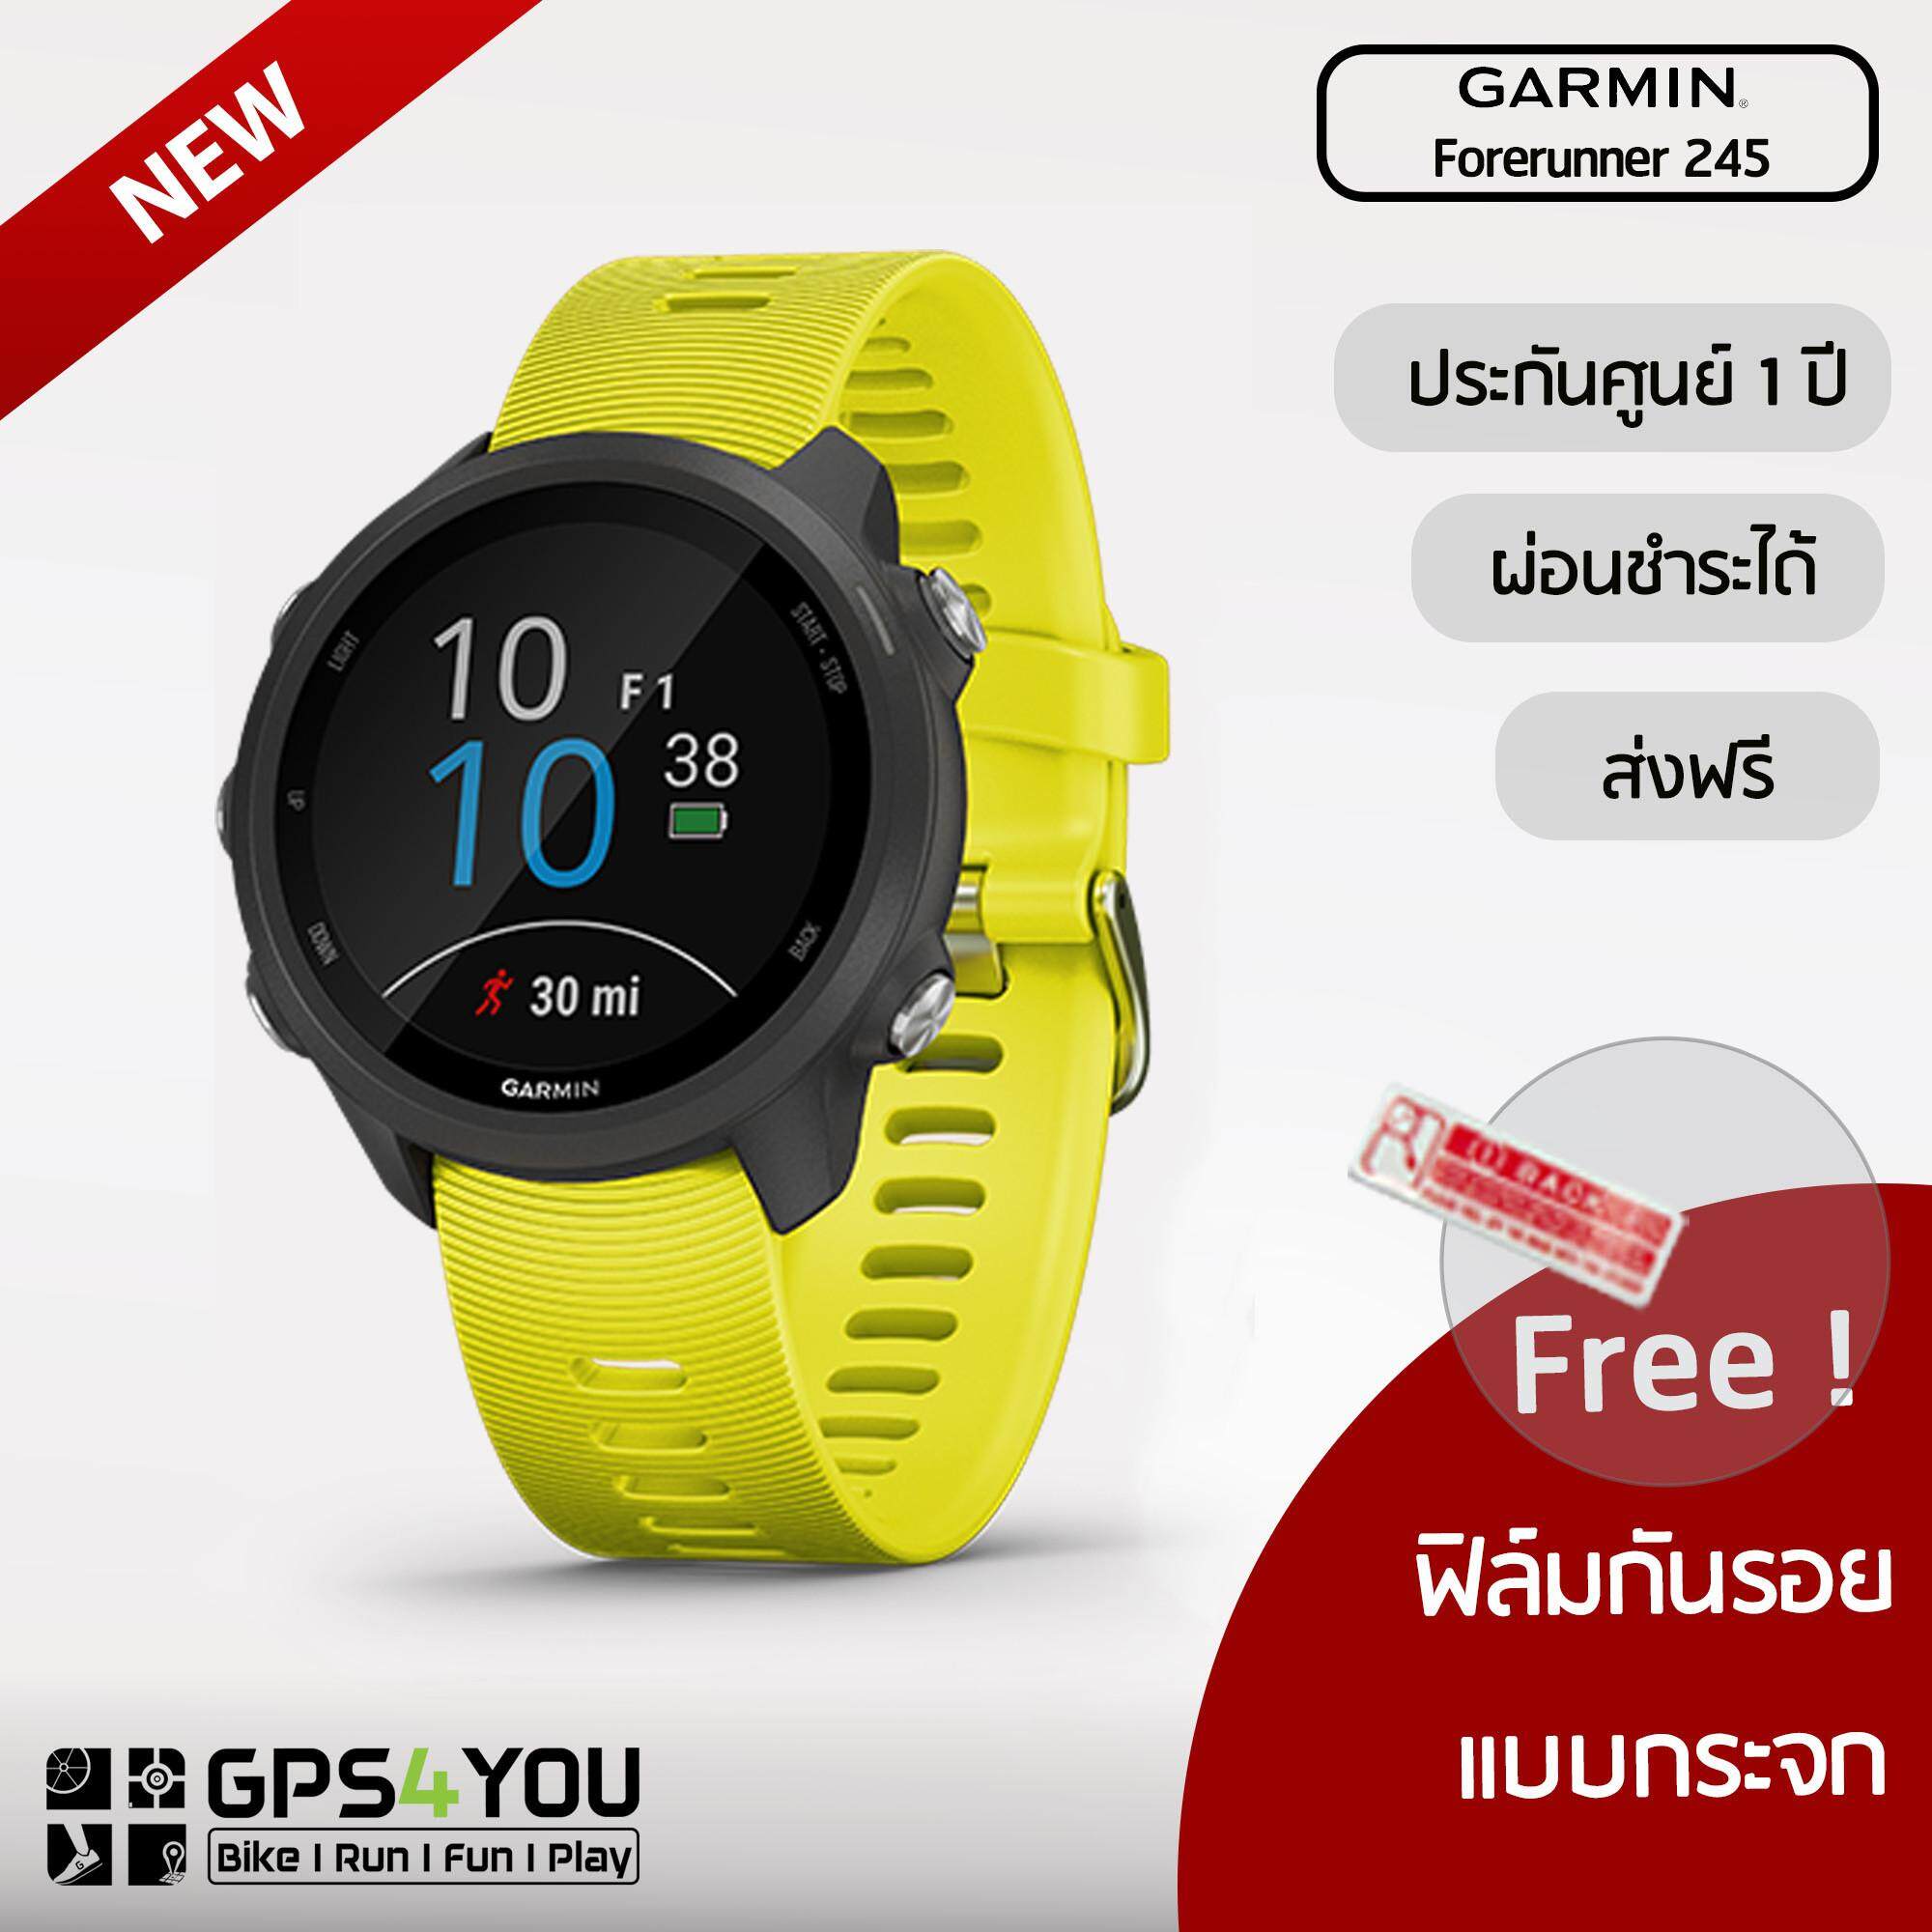  ราชบุรี Garmin Forerunner 245 (Yellow) นาฬิกาวิ่งระบบ GPS พร้อมคุณสมบัติการฝึกขั้นสูง (สีเขียวมะนาว)